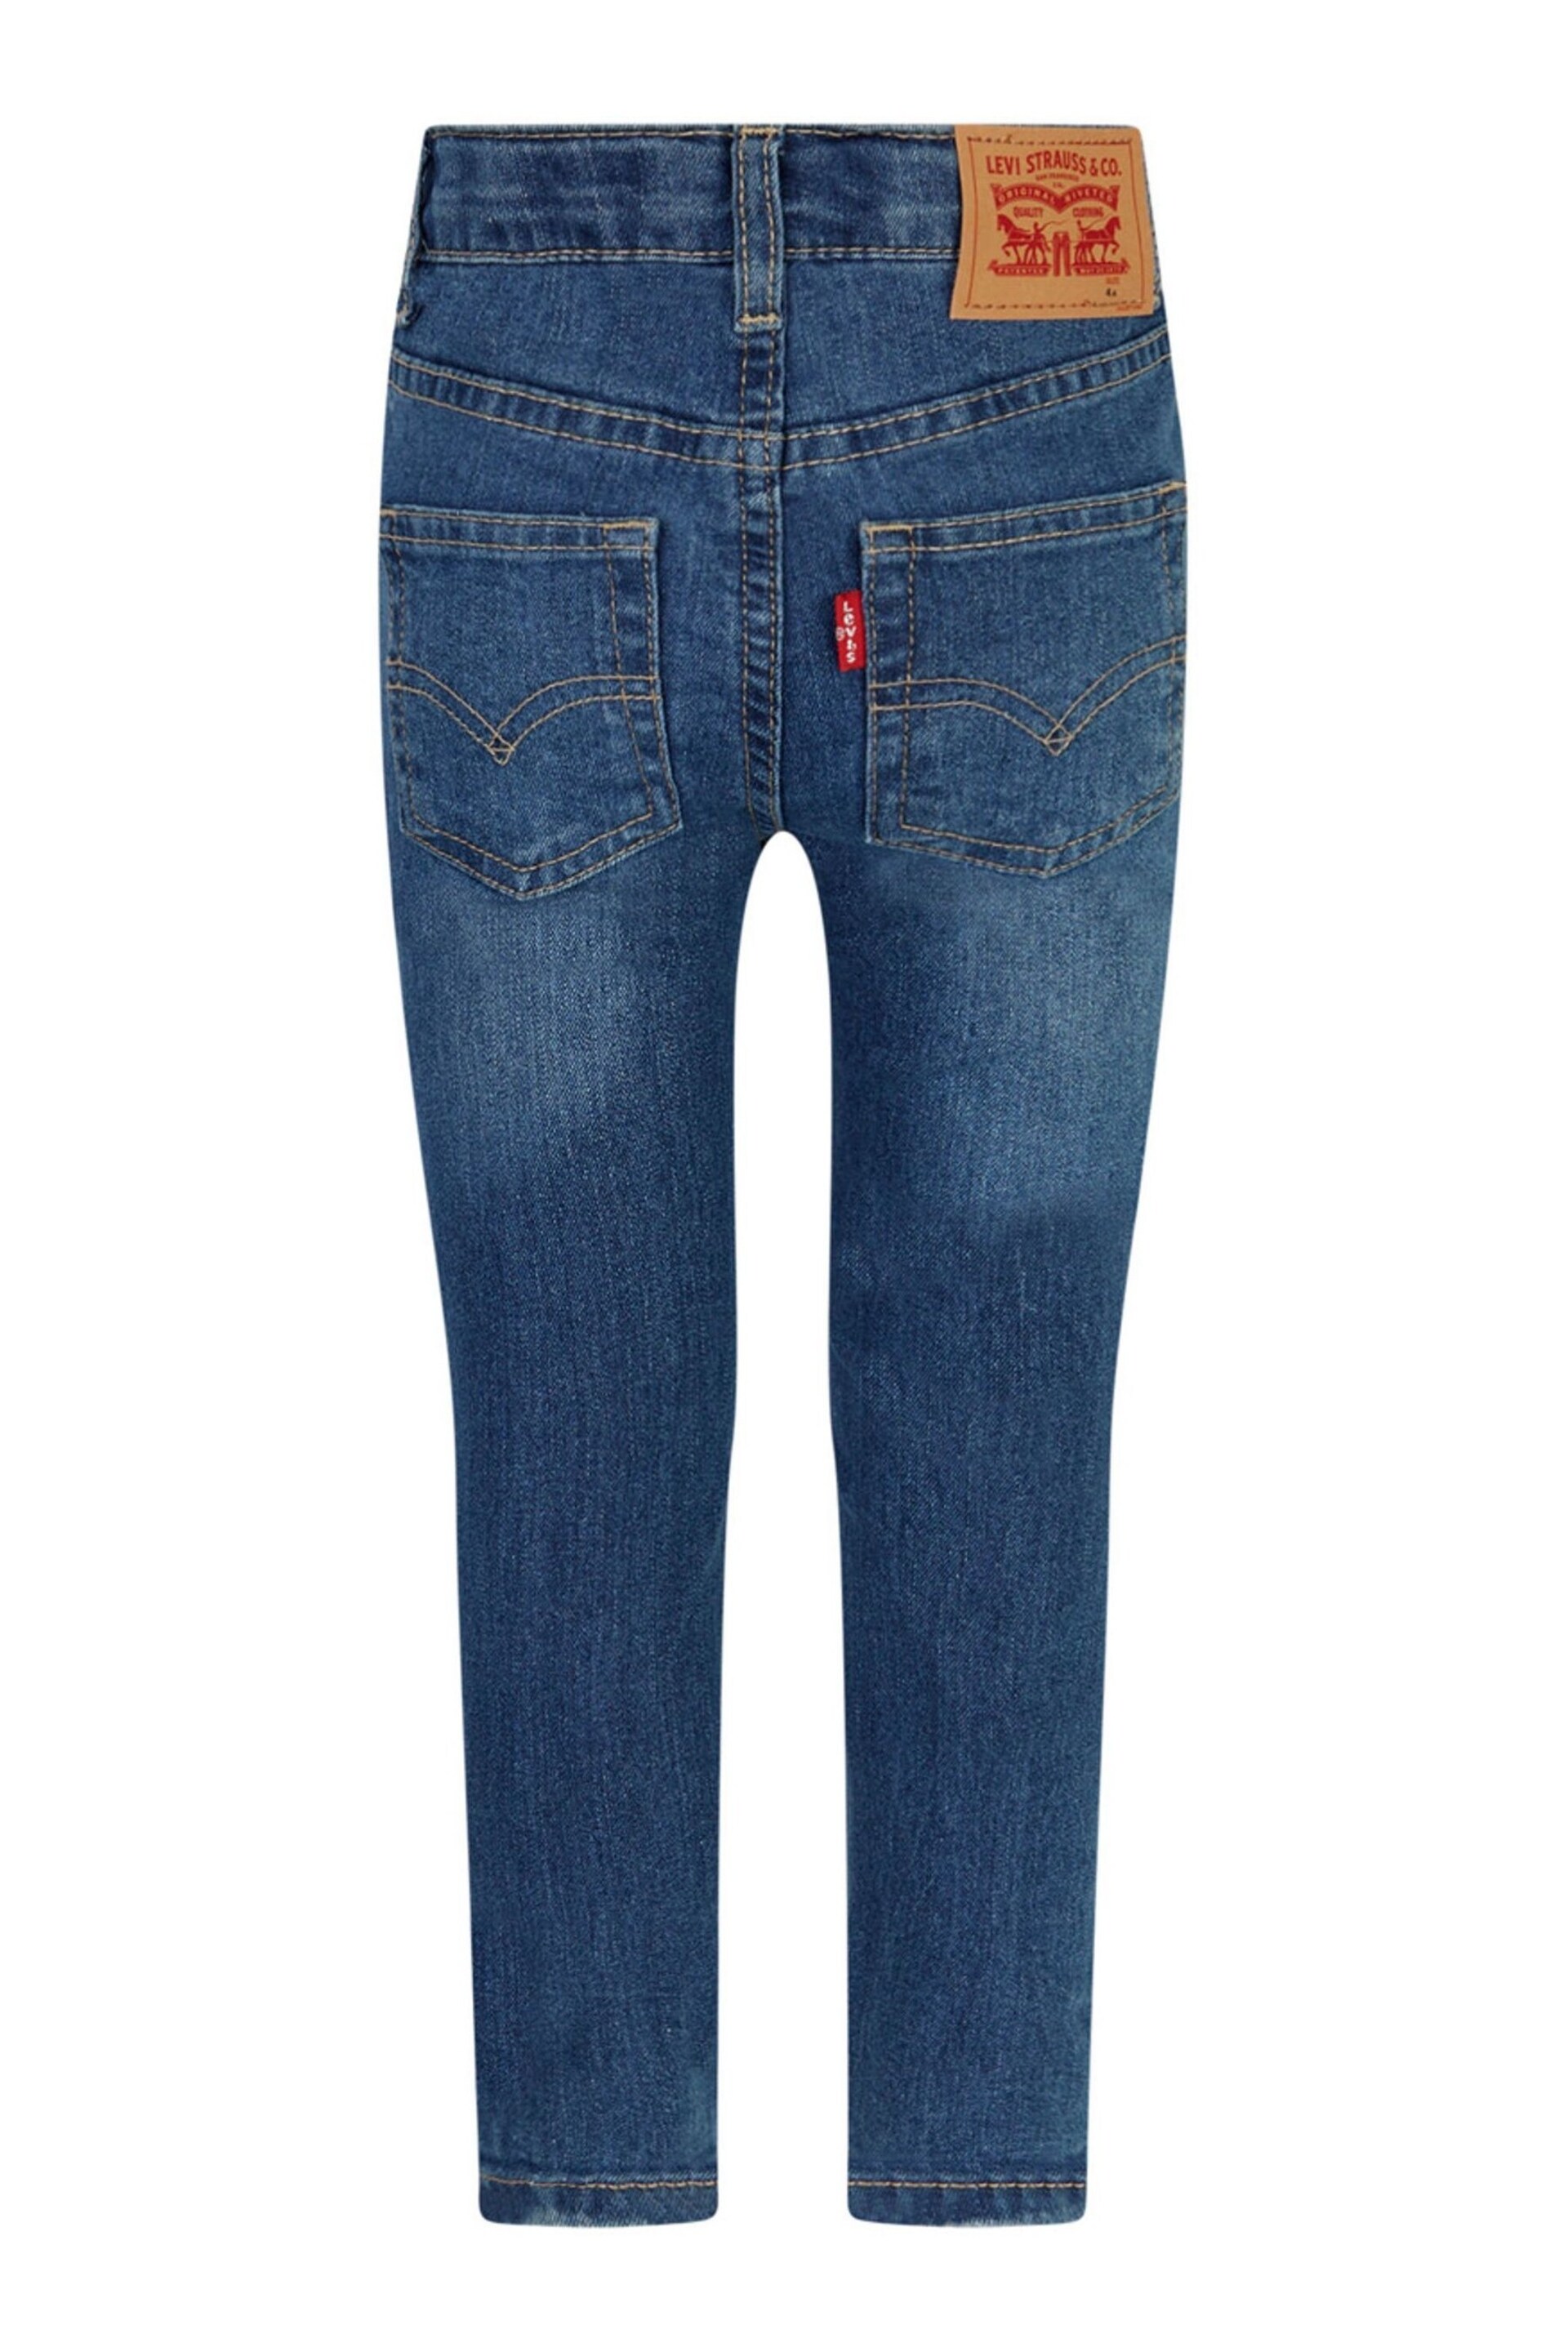 Levi's® Boys Blue Cotton Jeans - Image 2 of 4